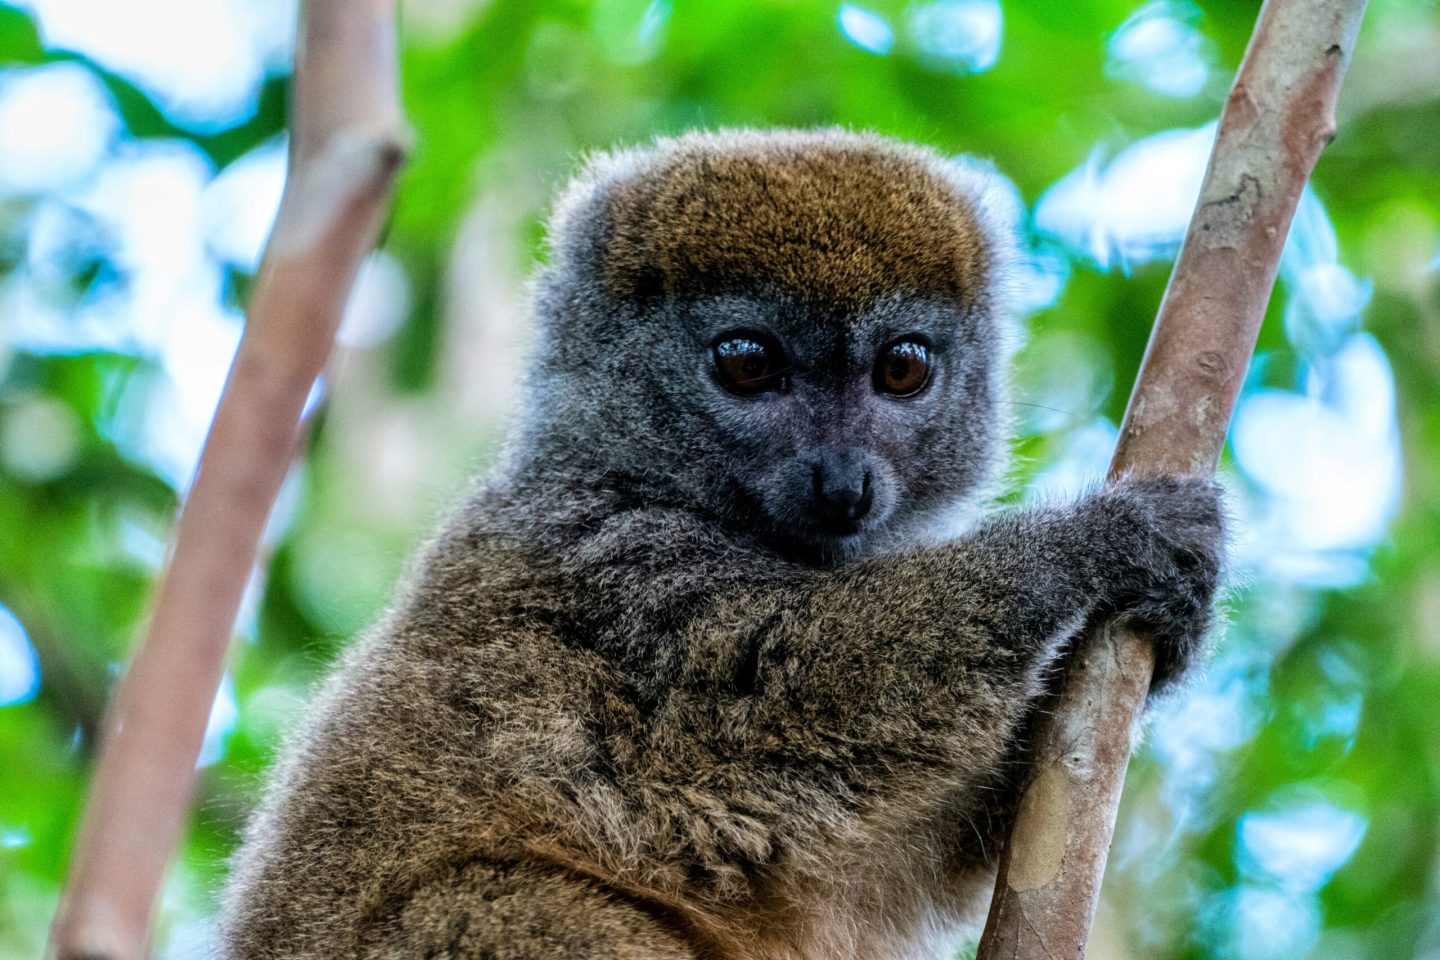 23 مليون سنة يحتاجها التنوع البيولوجي في مدغشقر للتعافي وتعويض الأنواع المنقرضة